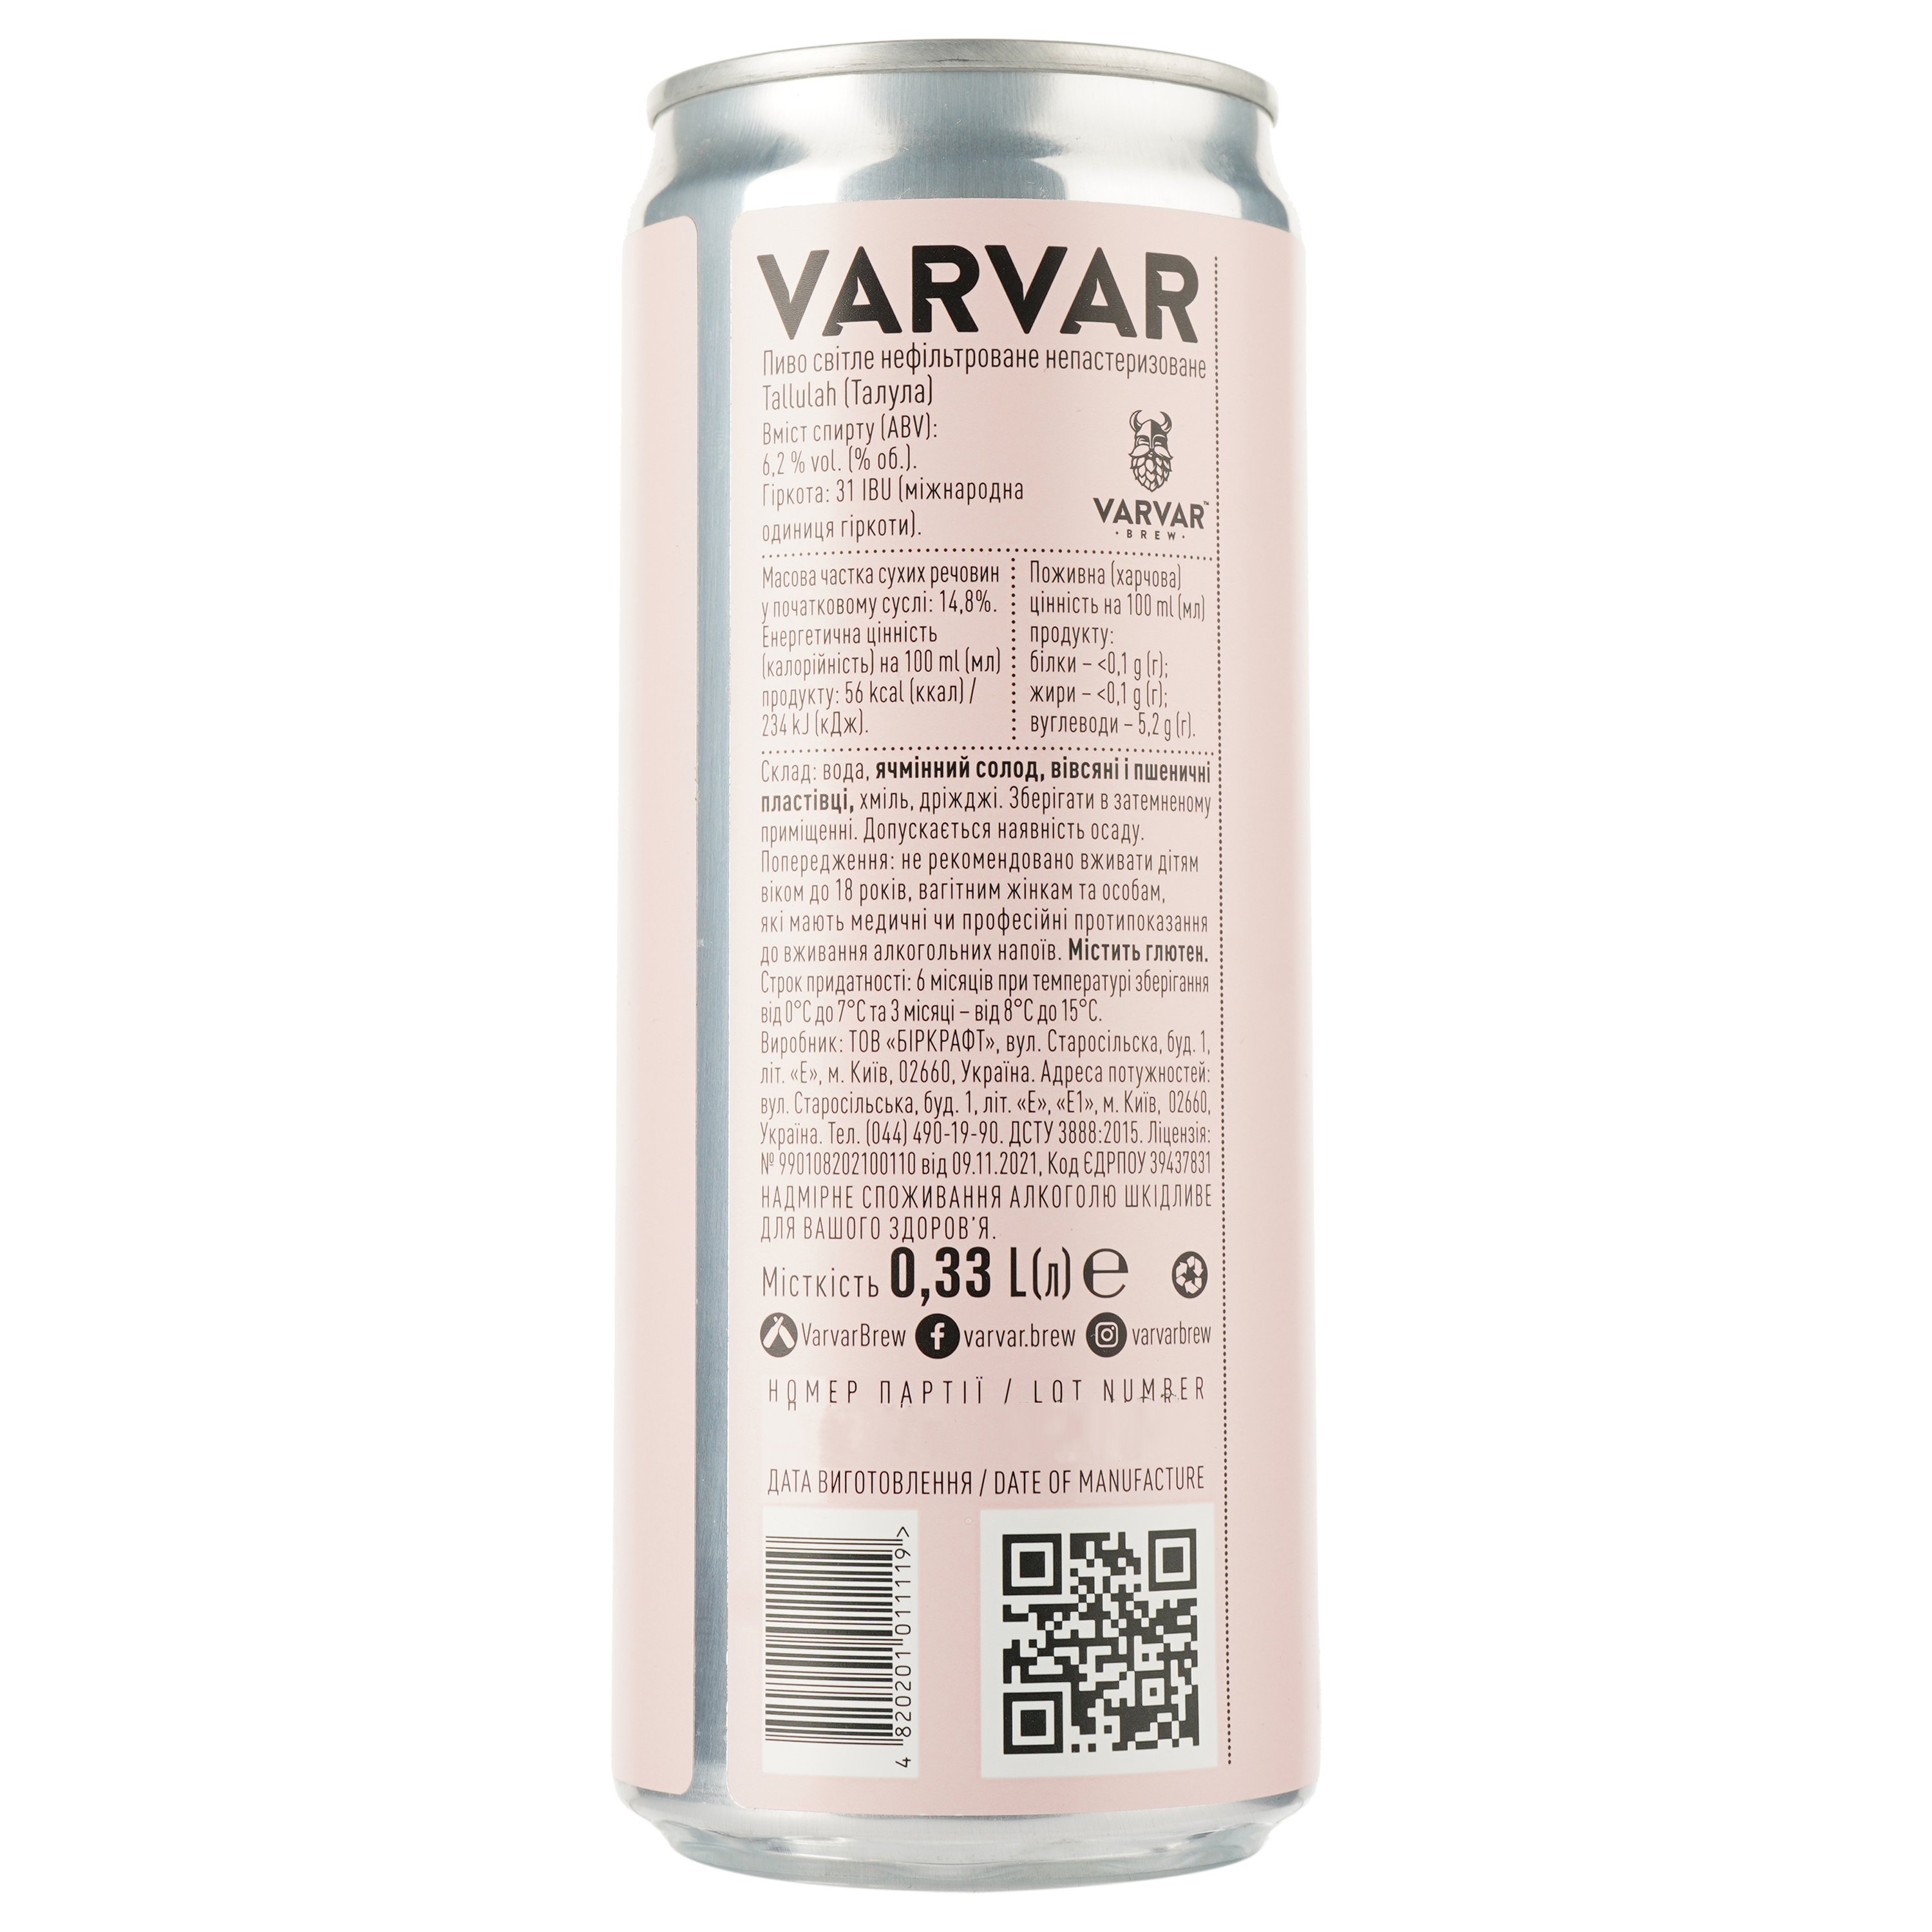 Пиво Varvar Tallulah, світле, 6,7%, з/б, 0,33 л - фото 2